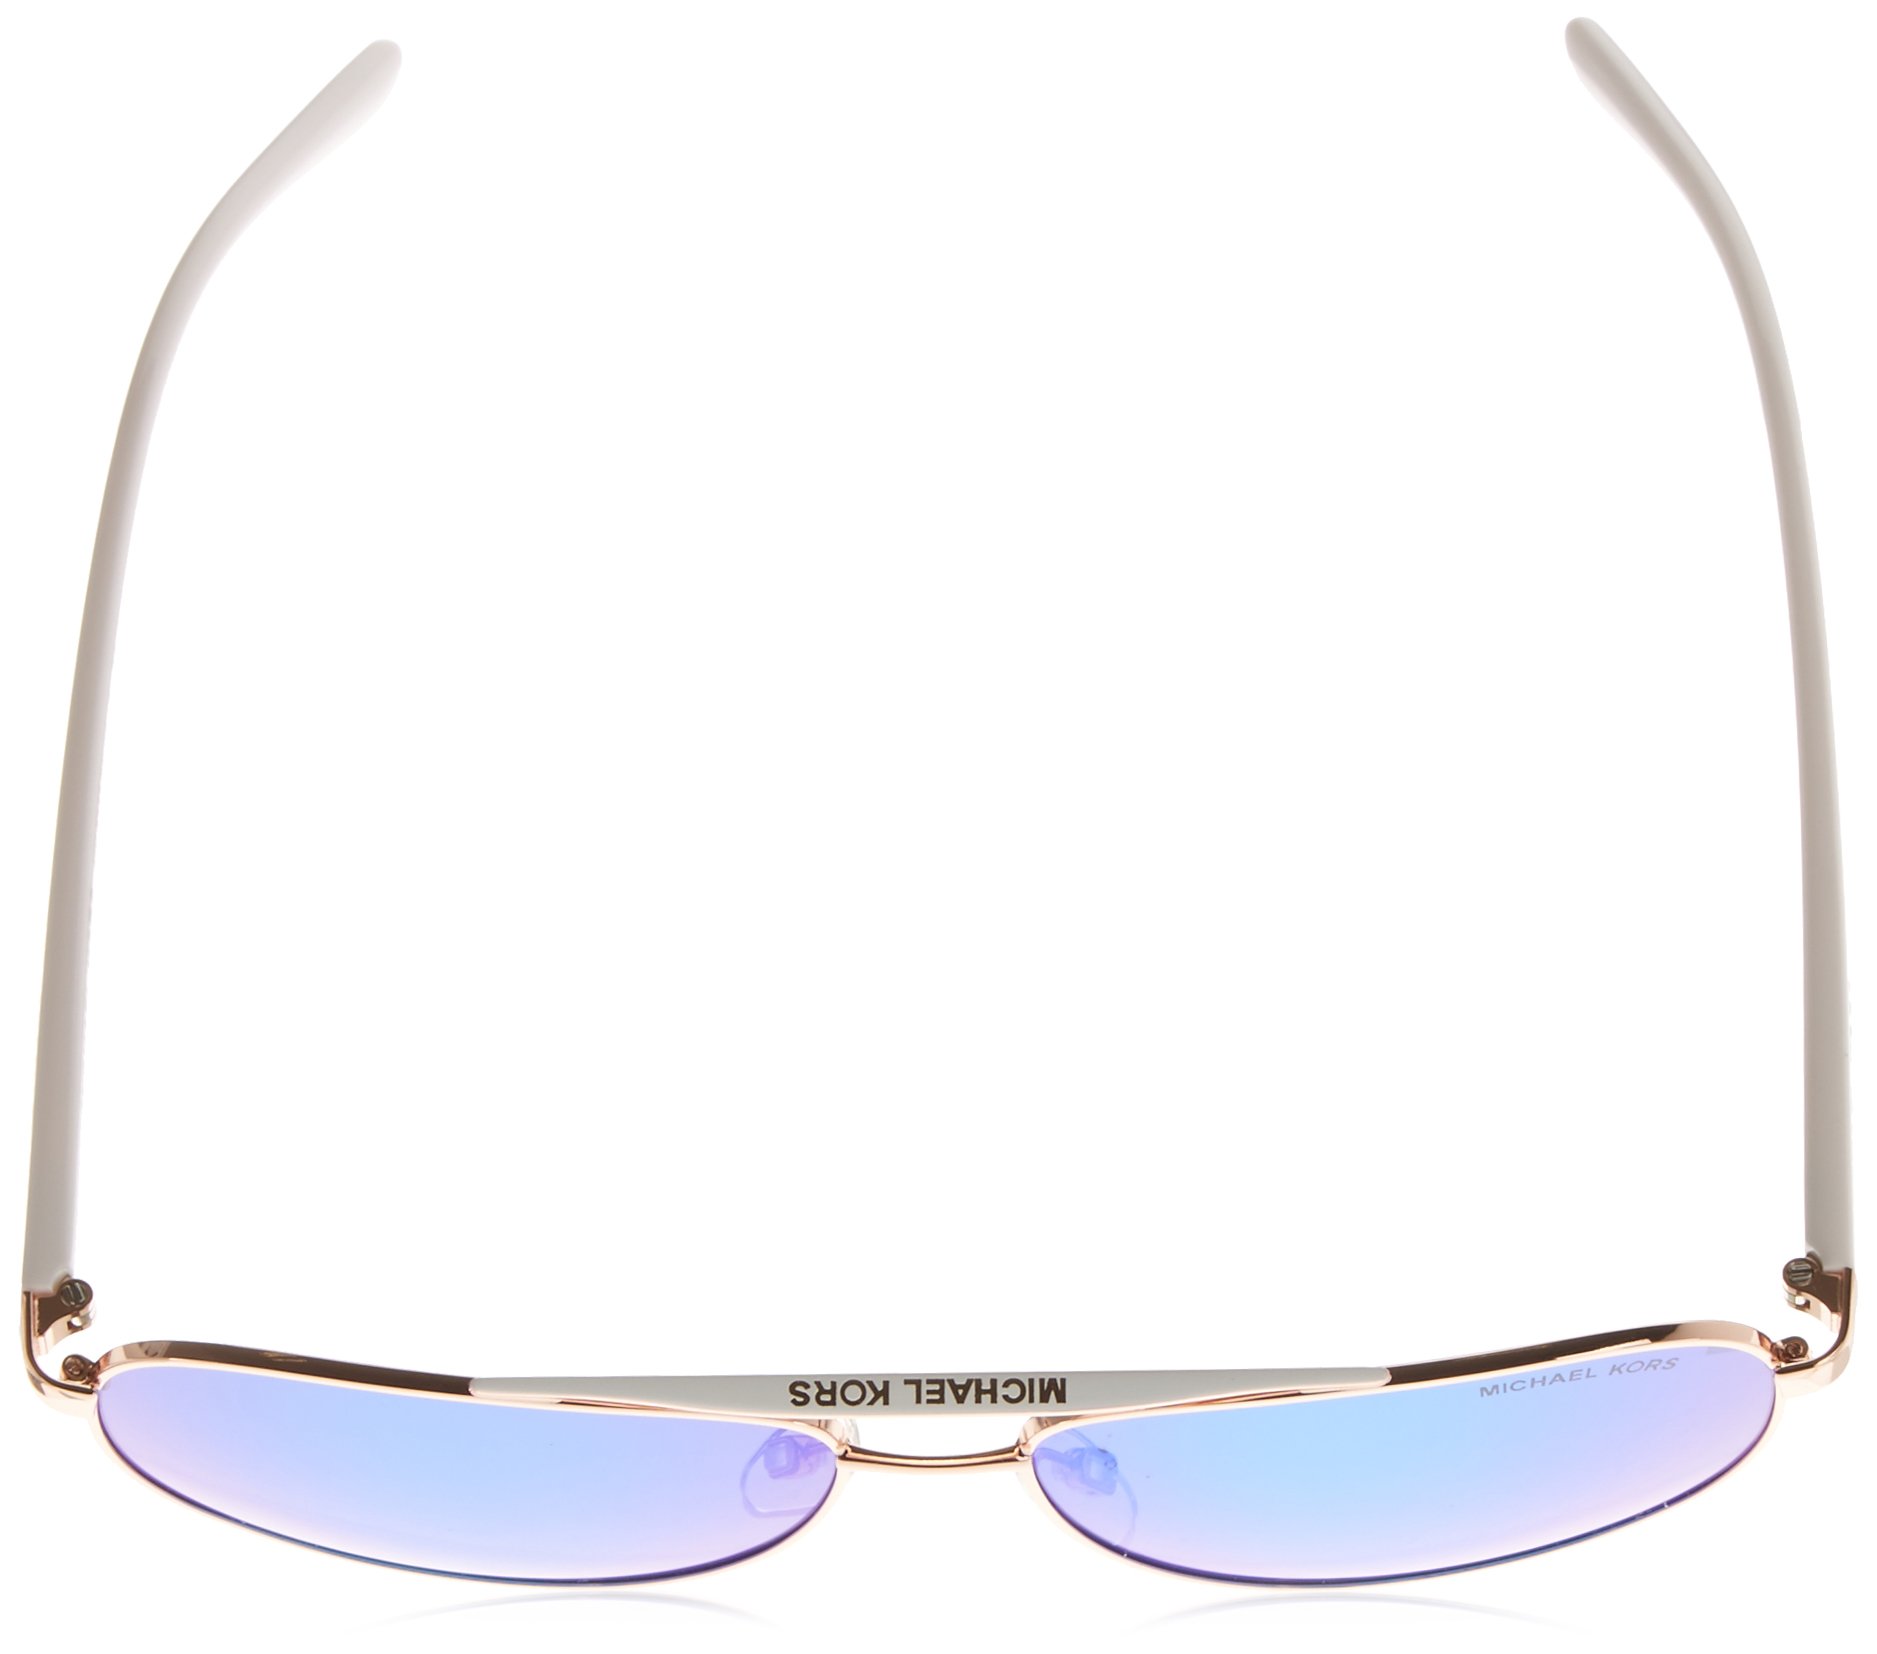 Michael Kors MK5007 104525 Rose Gold White Hvar Pilot Sunglasses Lens Category, 59mm